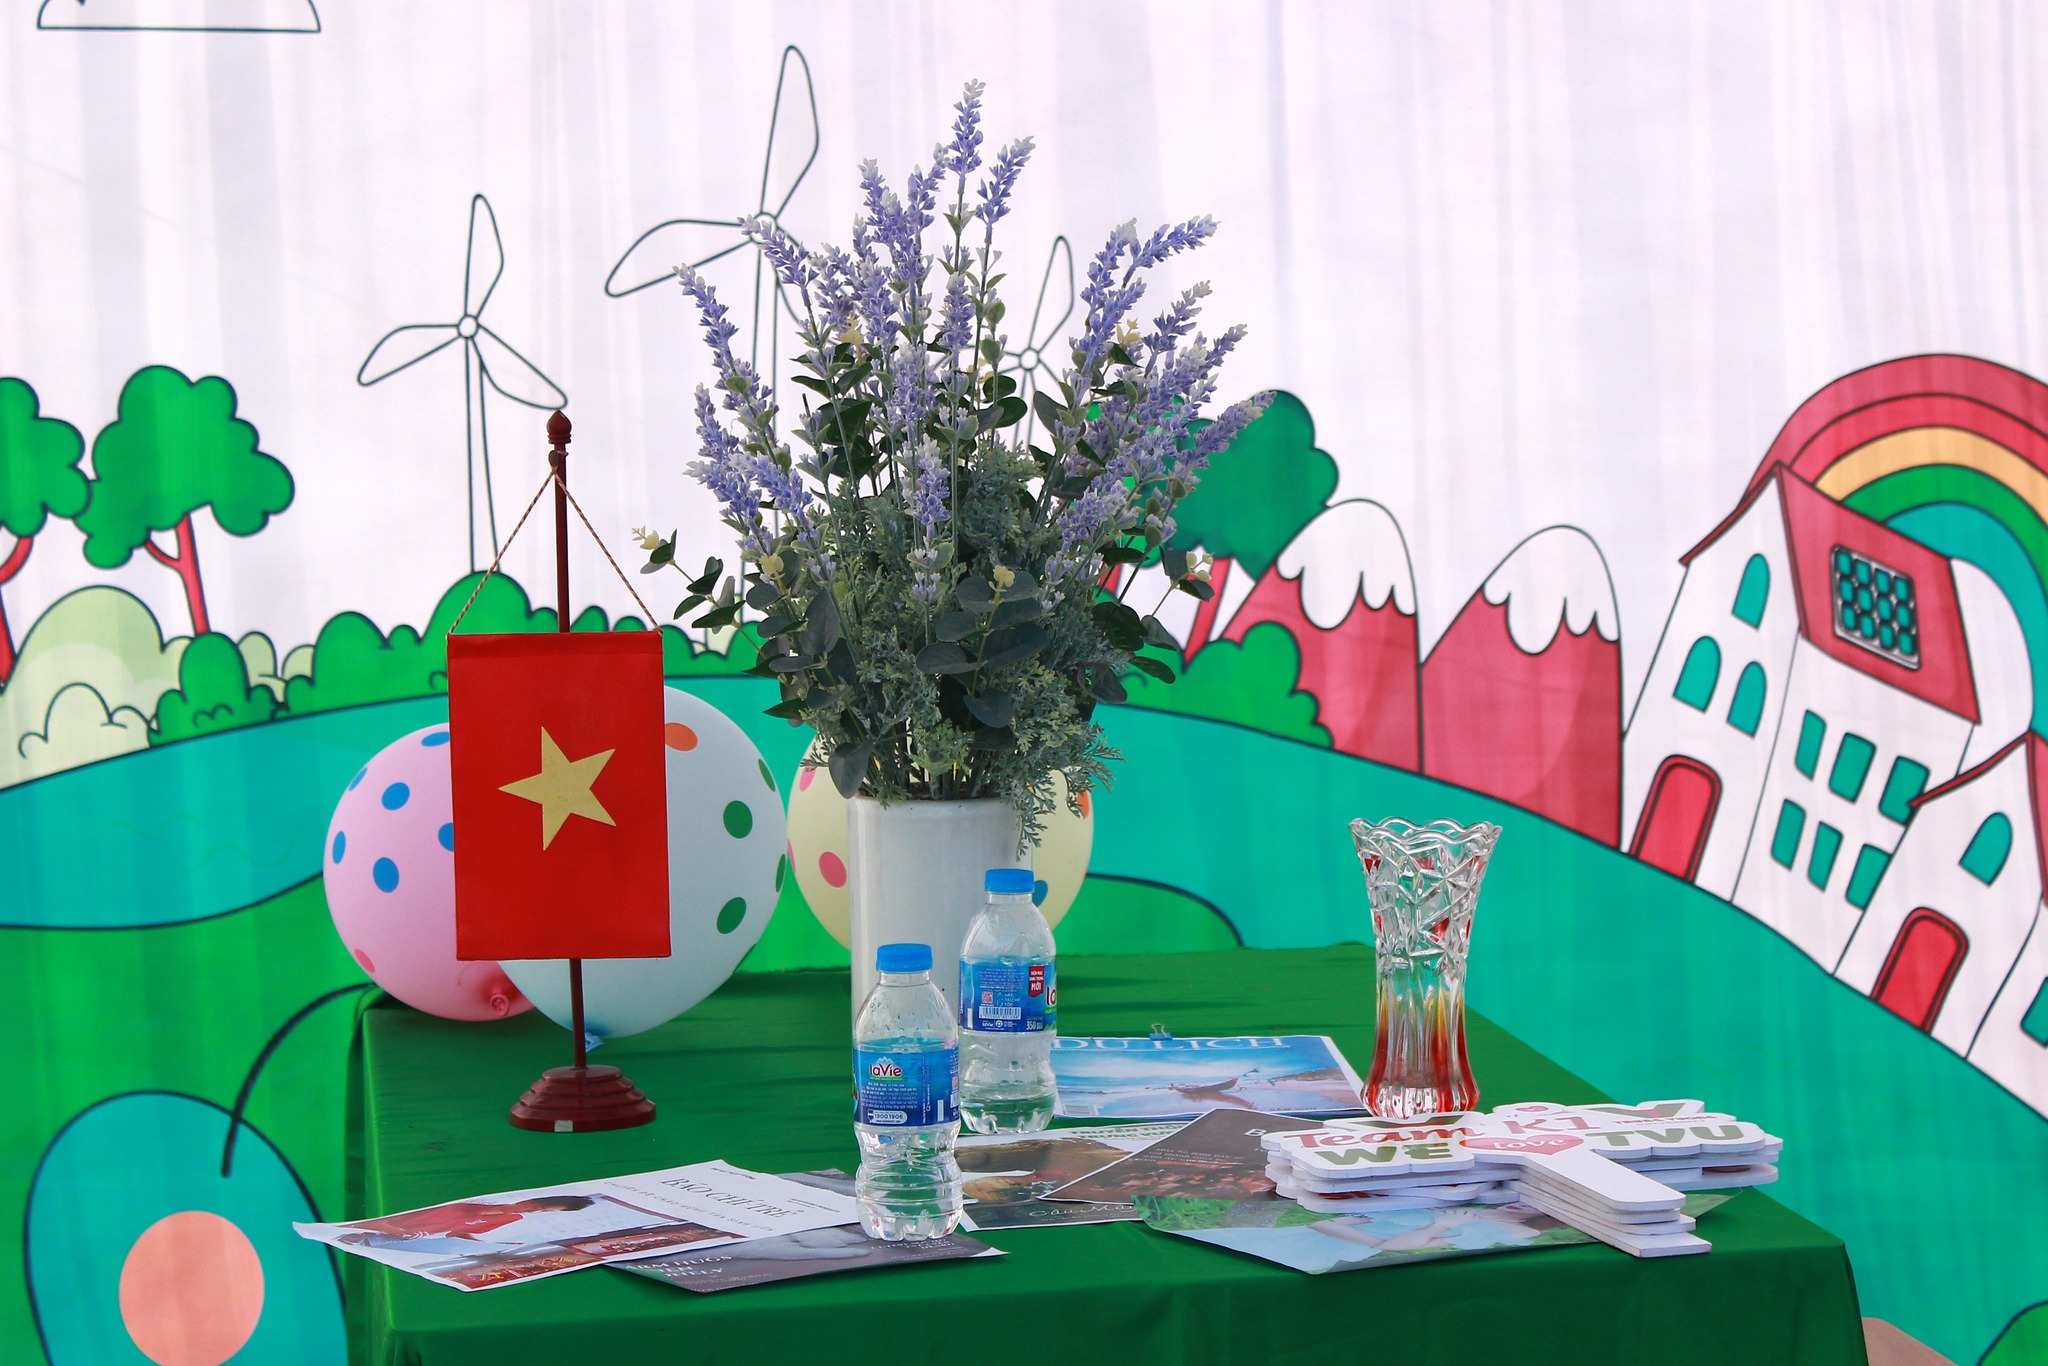 Sinh viên Truyền thông tạo nhiều dấu ấn trong cuộc thi thiết kế trại do trường Đại học Trưng Vương tổ chức cùng chuỗi hoạt động kỷ niệm Ngày nhà giáo Việt Nam 20/11_6